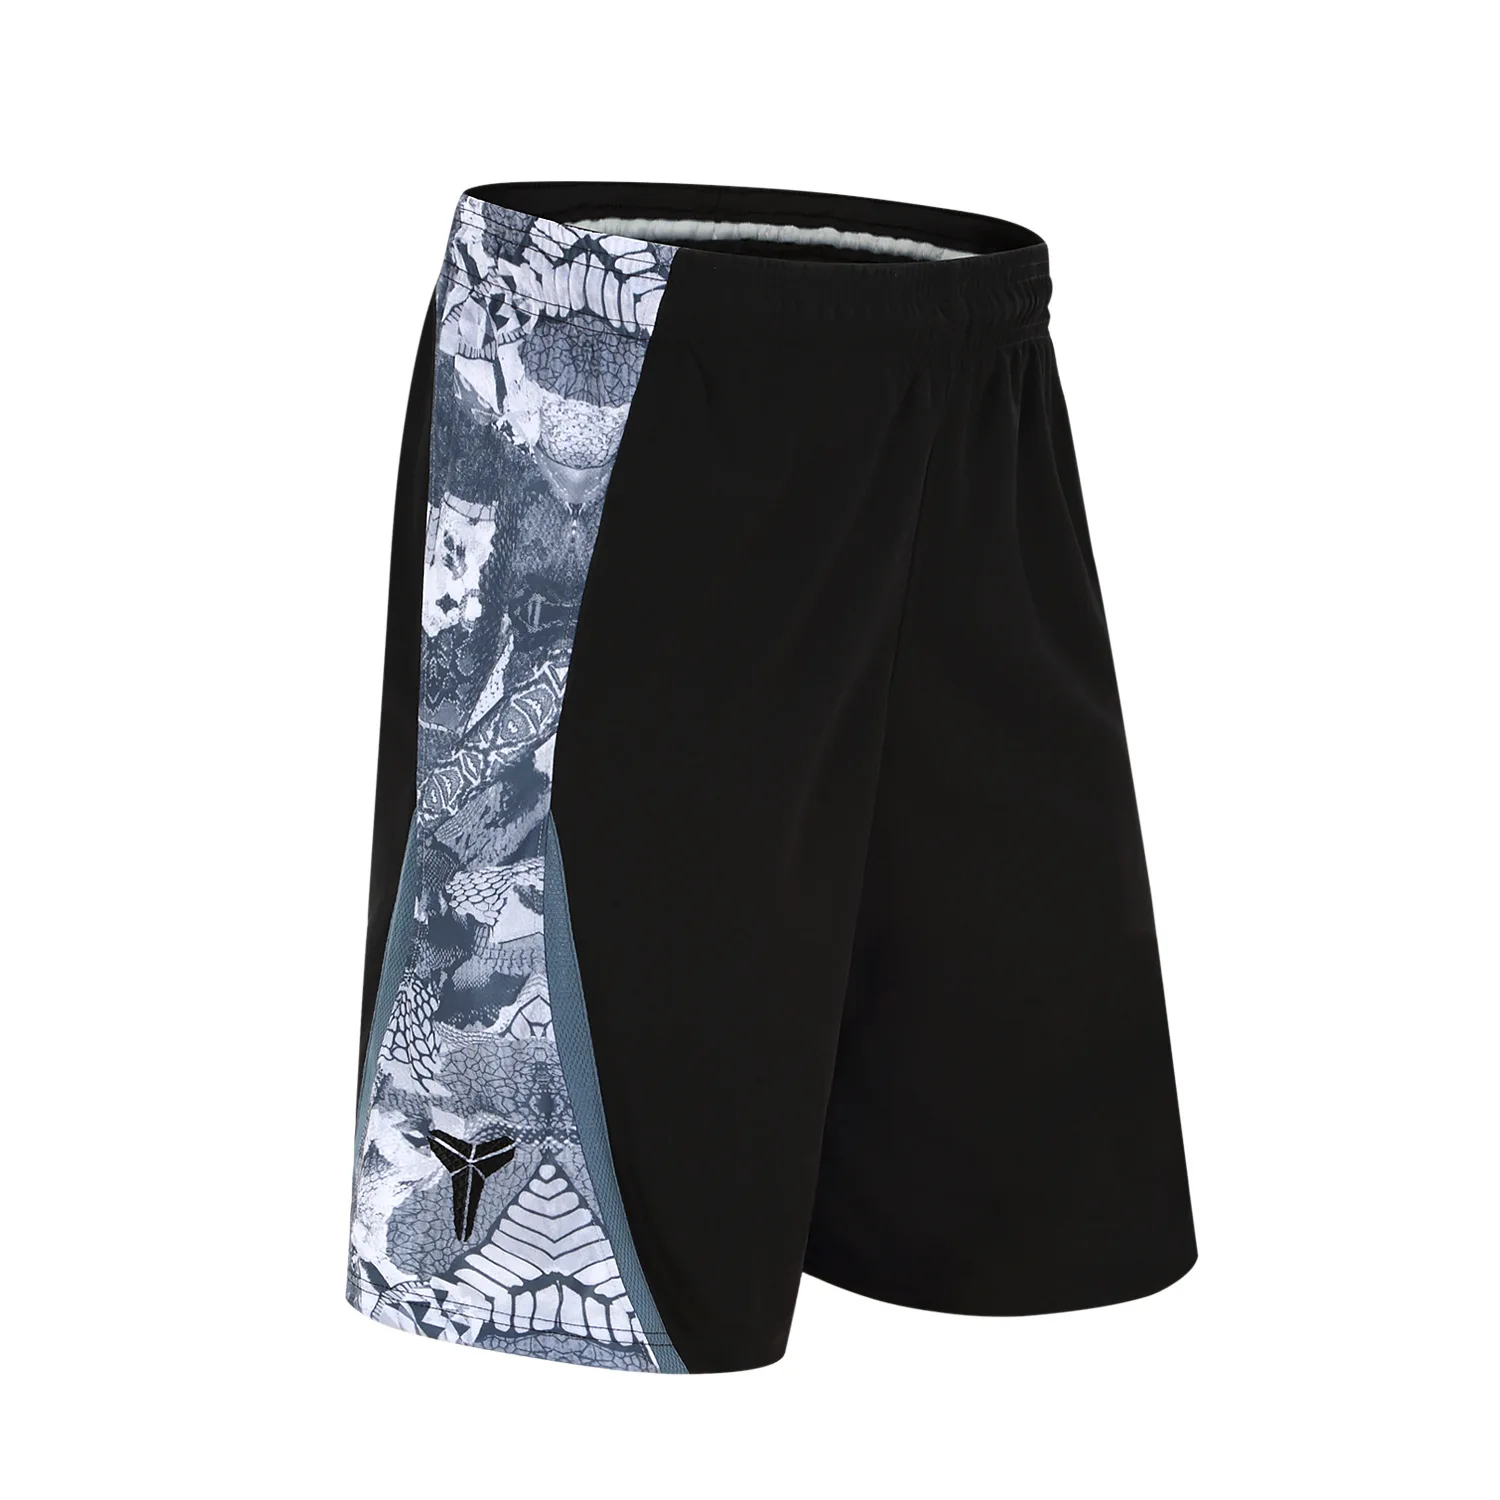 SYNSLOVE дизайн цветочный принт тренировочный баскетбольный мяч бег Кобе спортивные шорты свободные половина длины плюс размер с двойным карманом